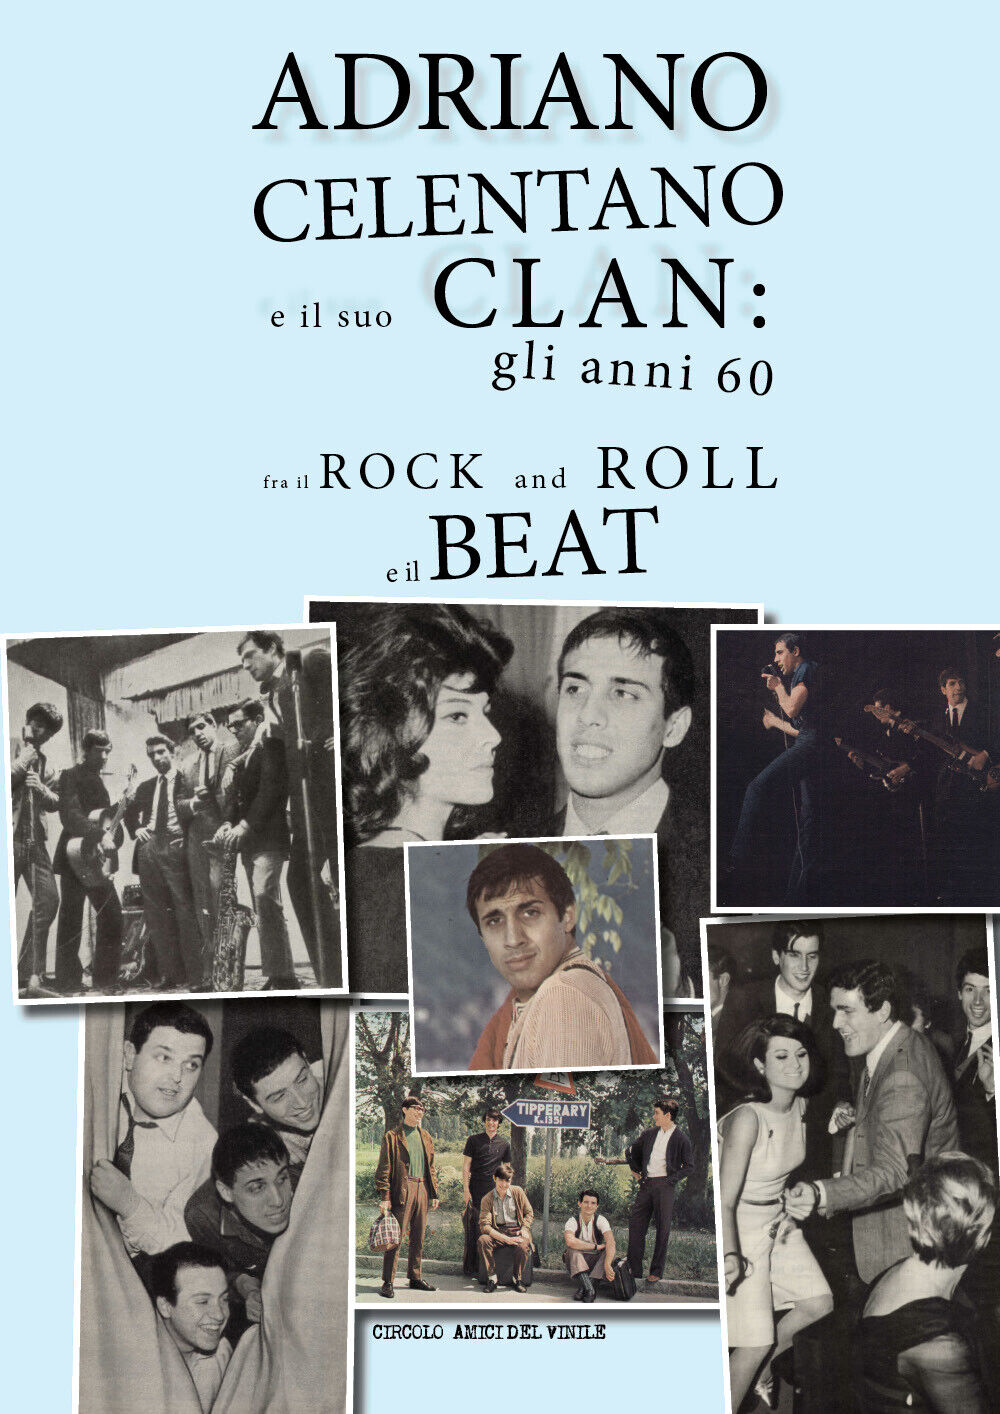 Adriano Celentano e il suo Clan: gli anni 60 fra il rock and roll e il beat di C libro usato